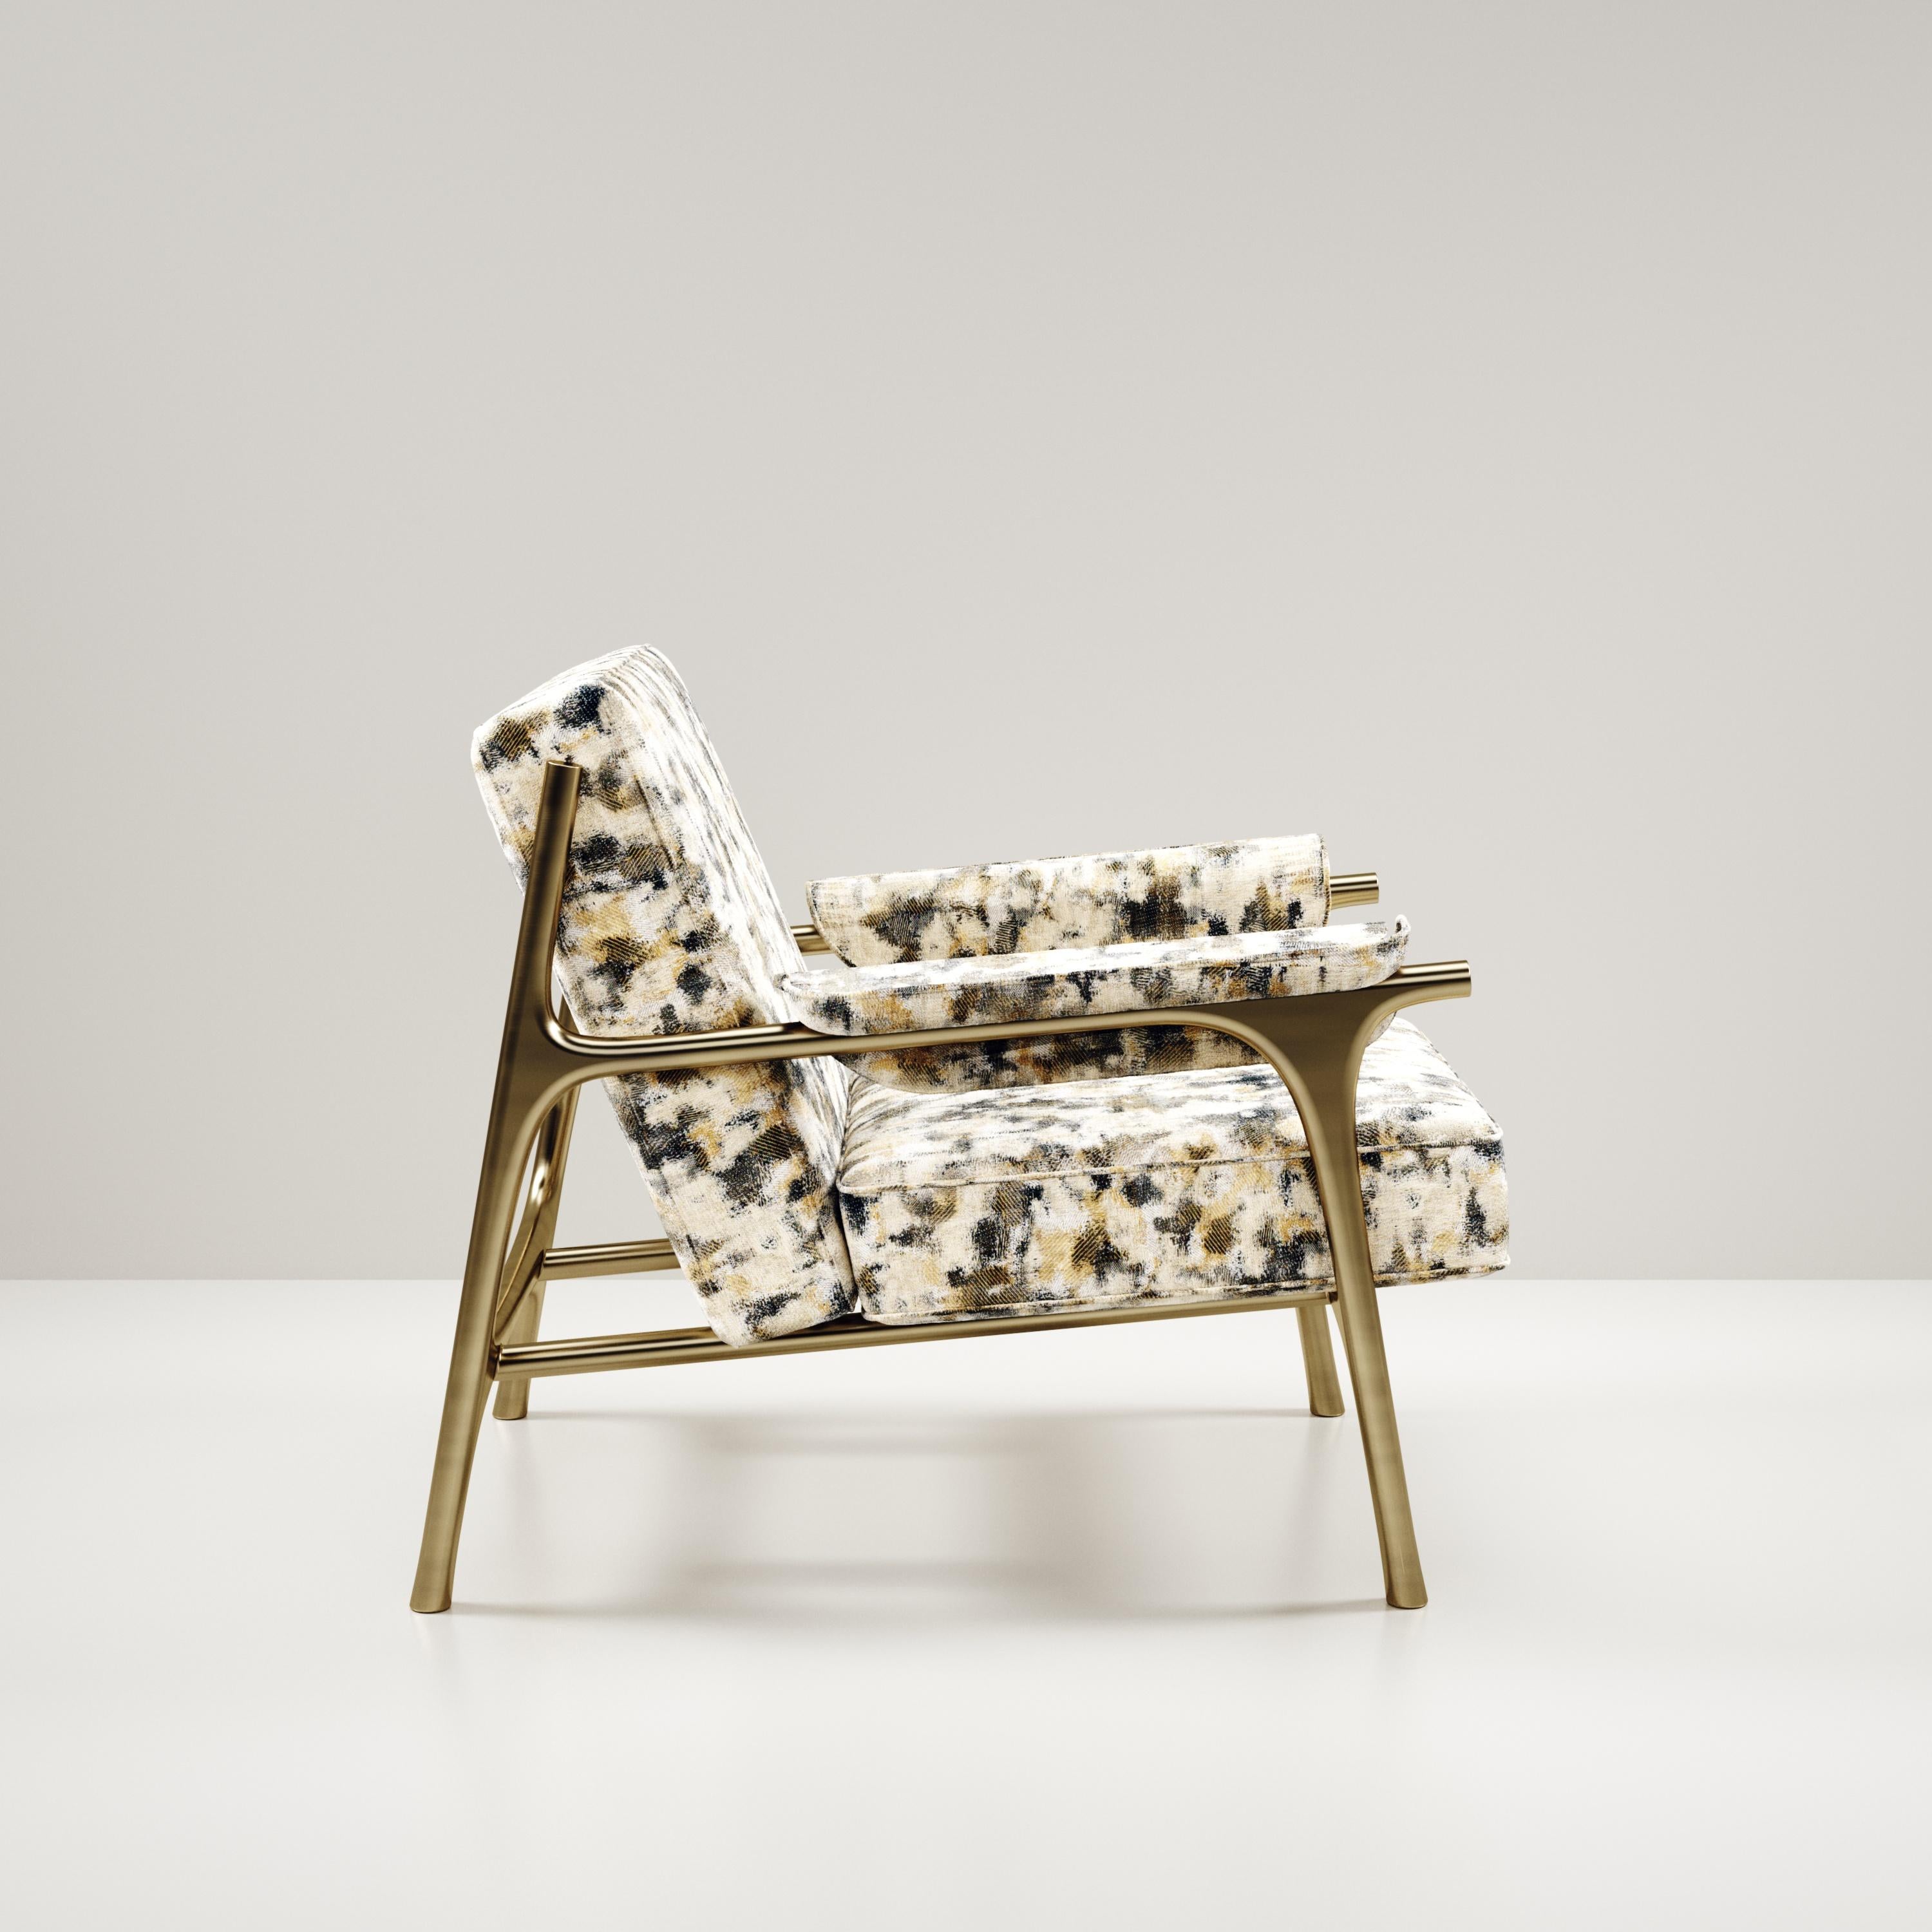 Le fauteuil Ramo de R & Y Augousti est une pièce élégante et polyvalente. La pièce rembourrée en tissu Pierre Frey camouflage offre un confort tout en conservant une esthétique unique avec le cadre et les détails en laiton bronze-patiné. Le prix de